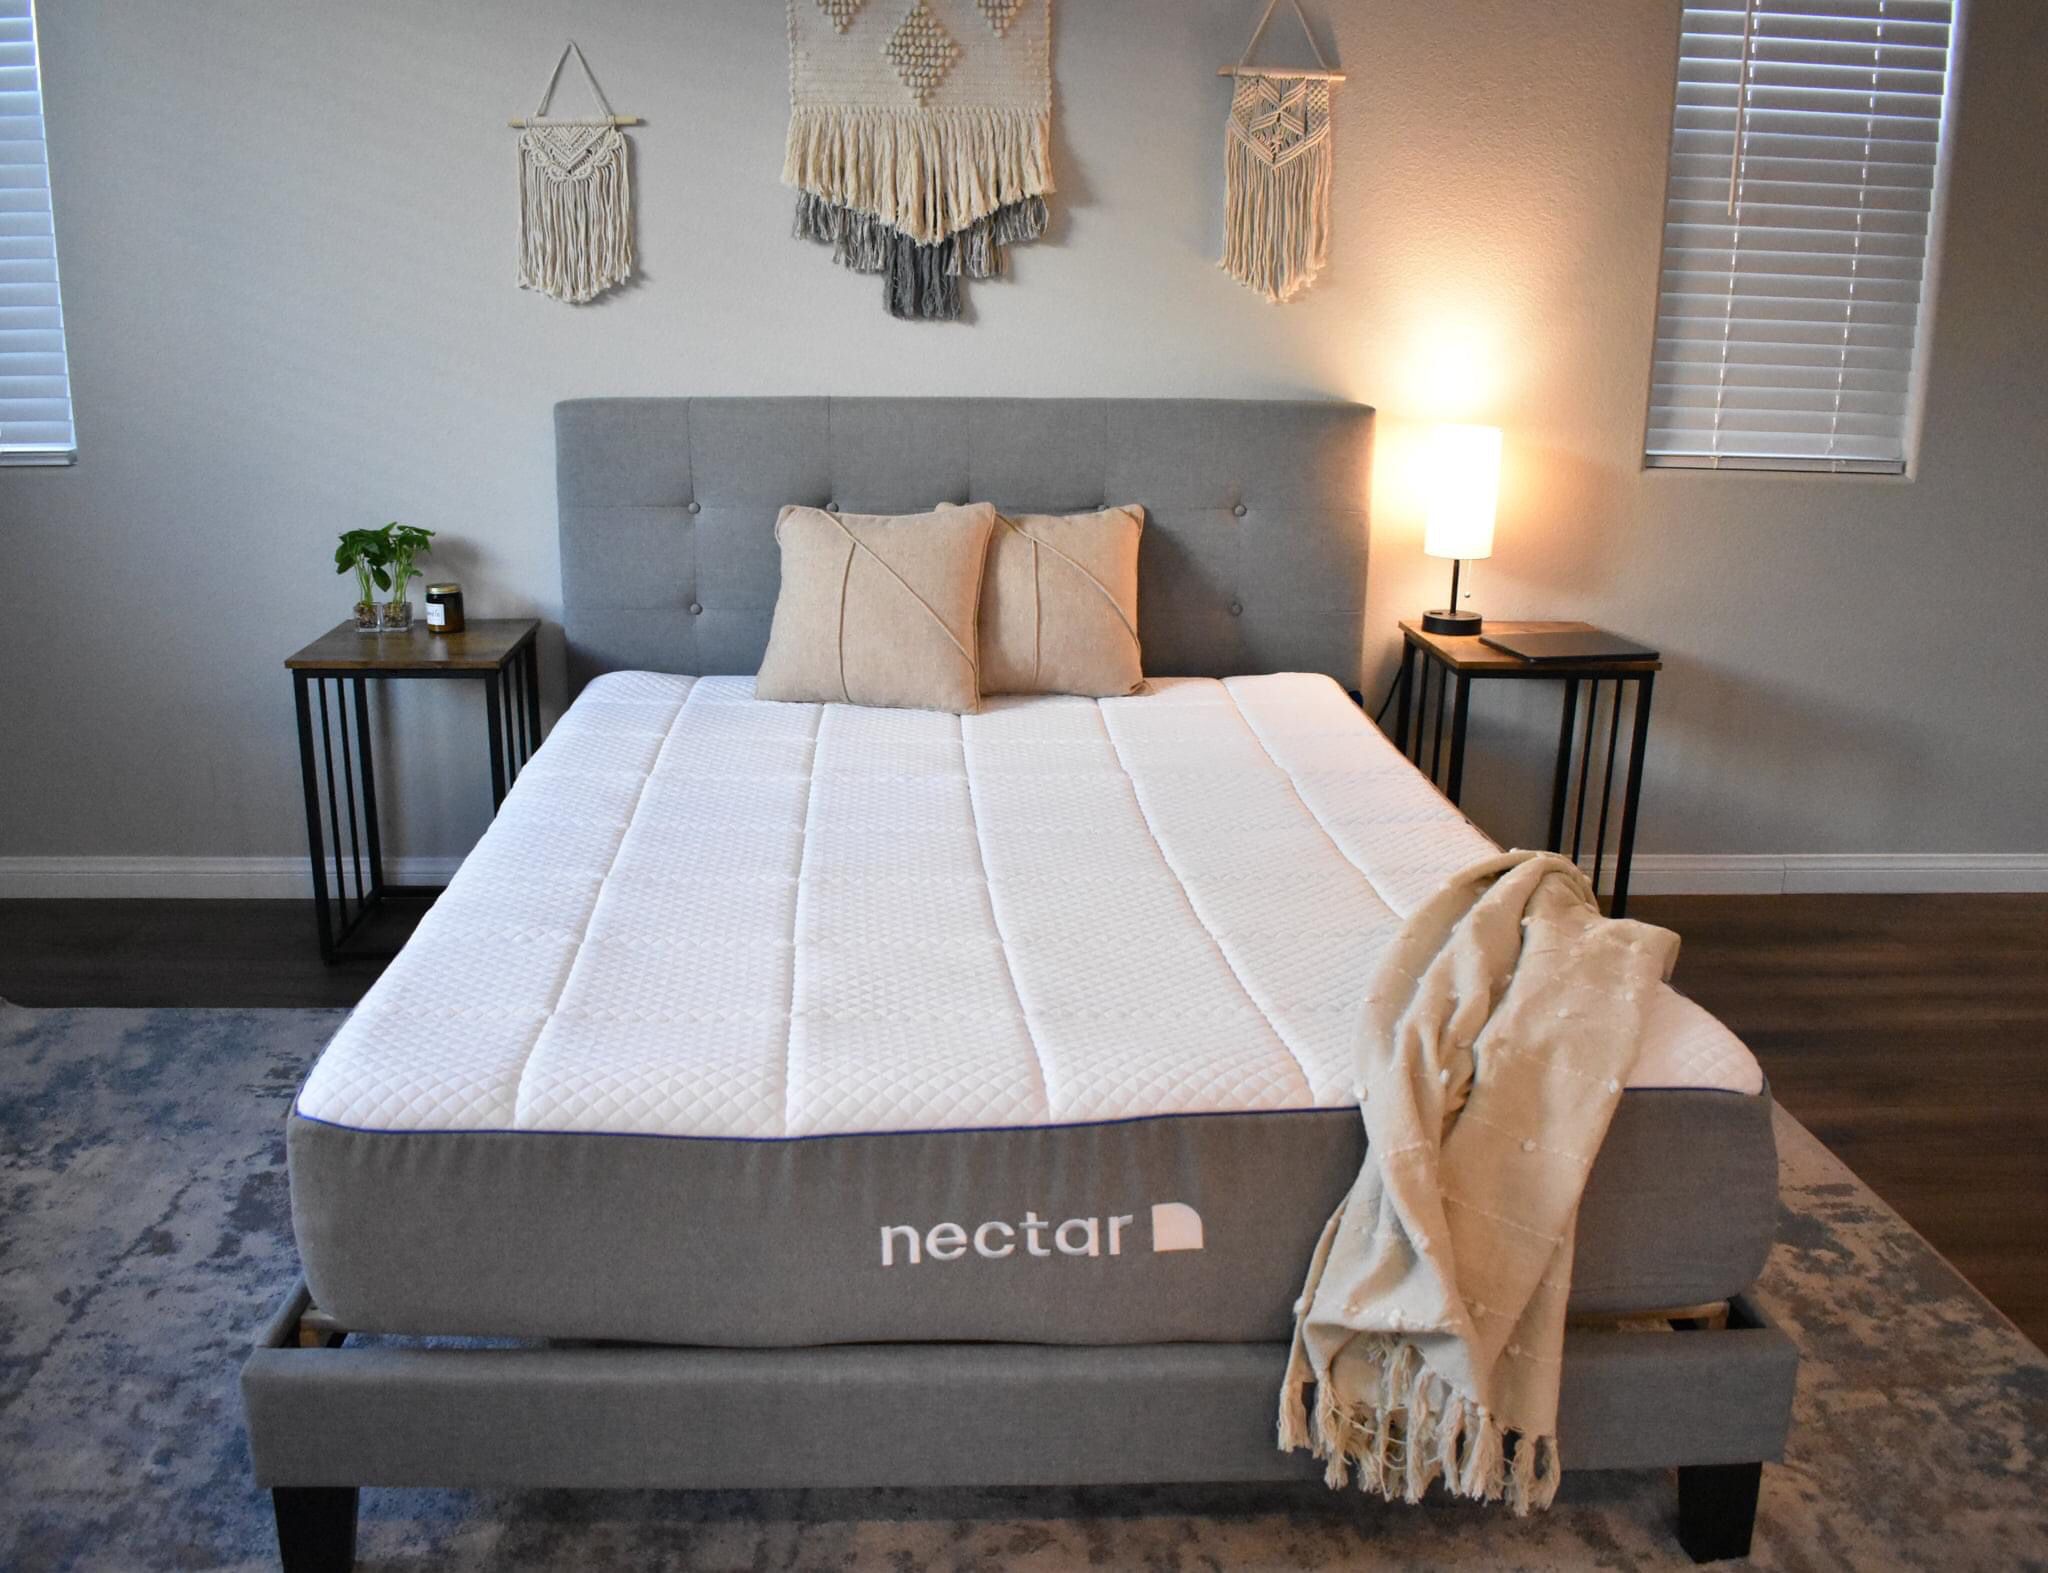 nectar queen side mattress